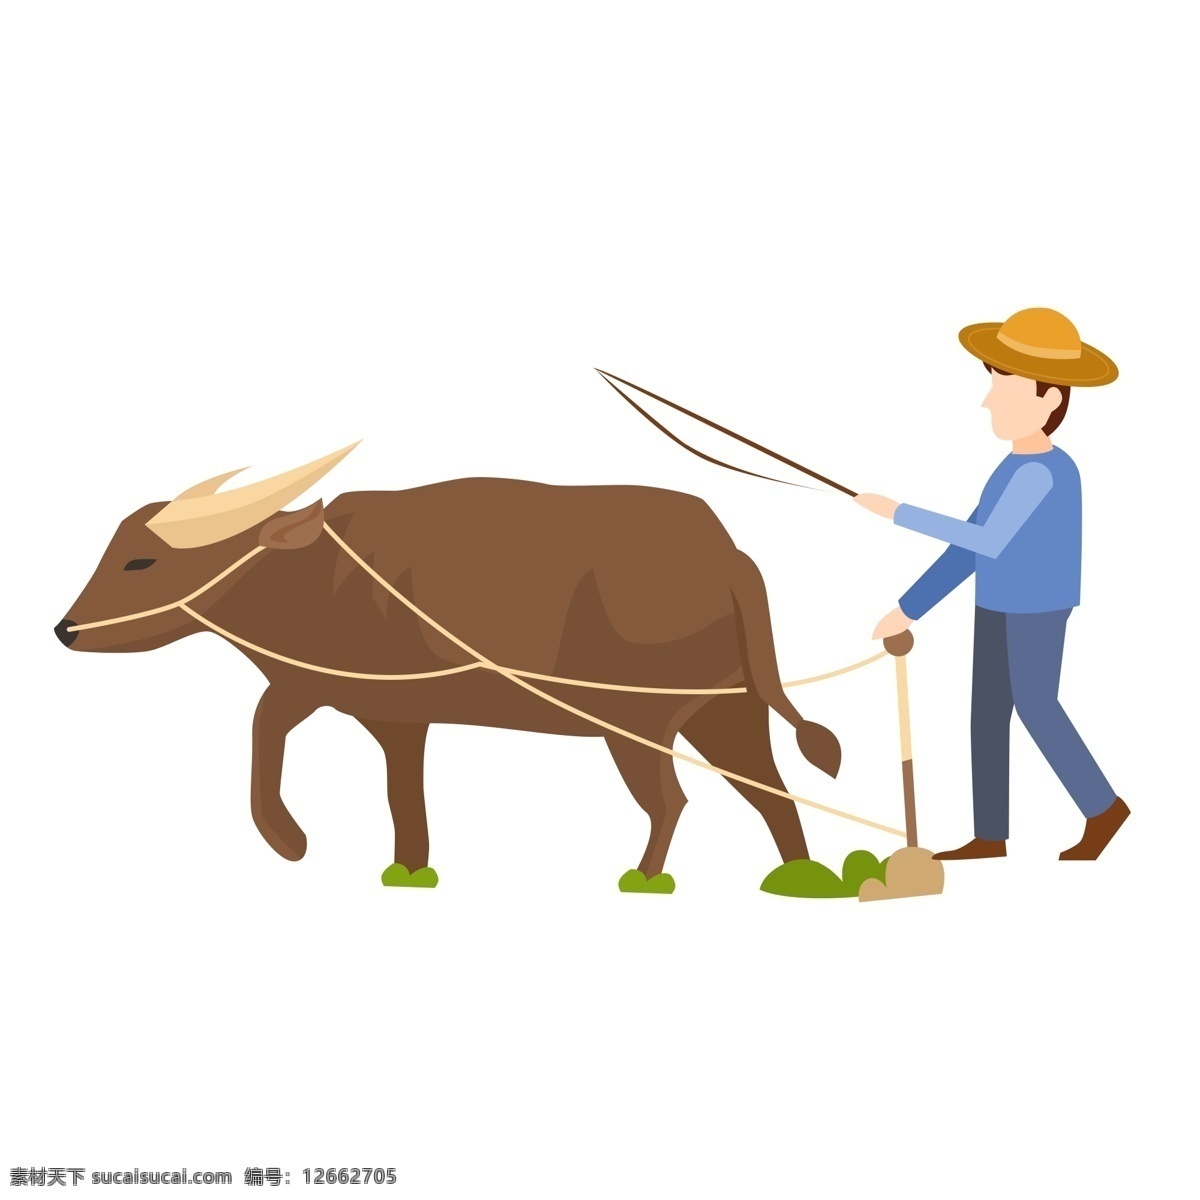 手绘 简约 农民 牛 元素 农民和牛 男子 人物插画 精致人物 手绘元素